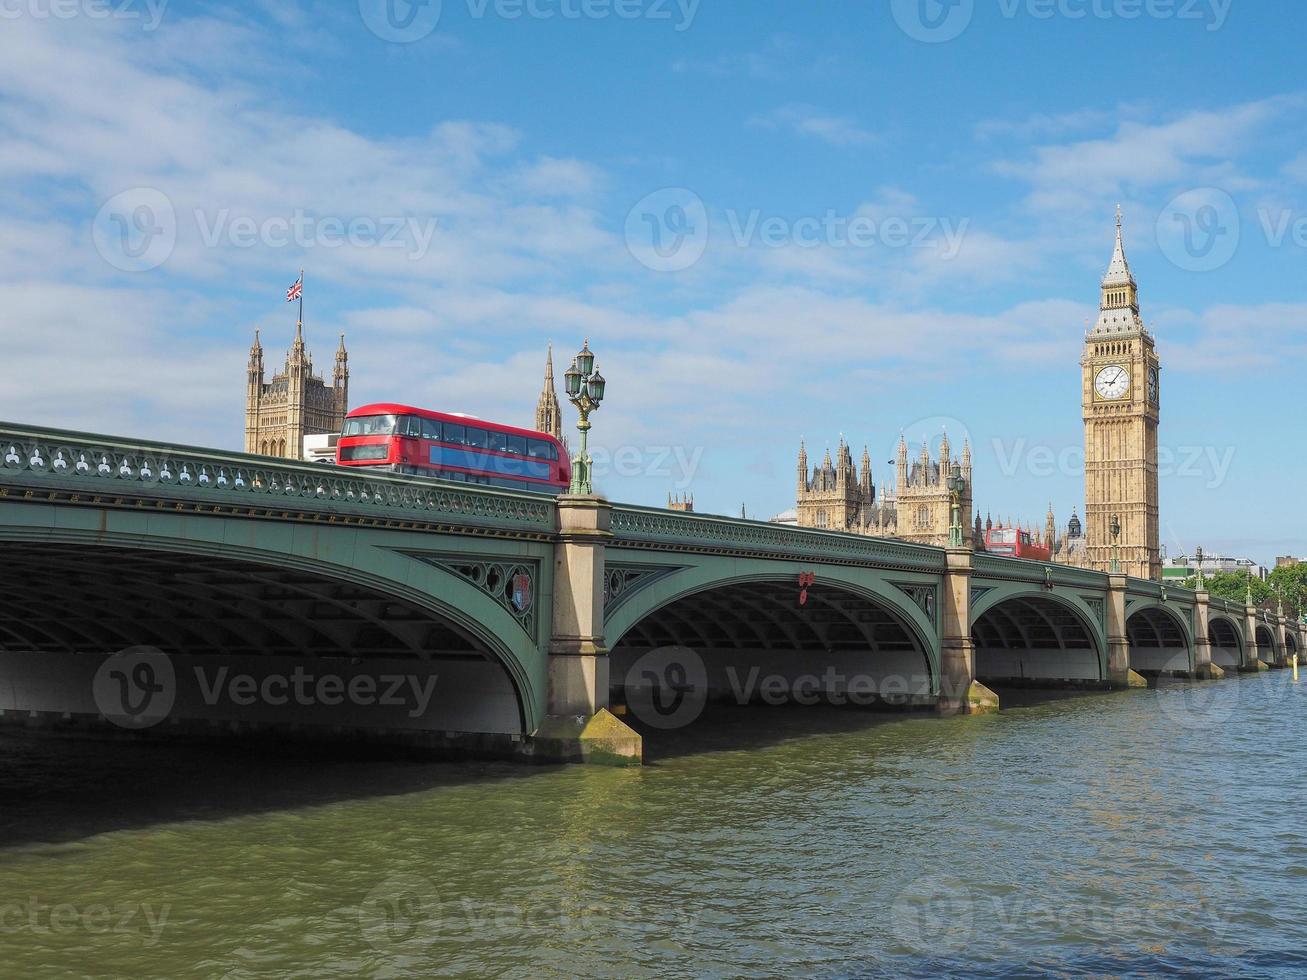 il ponte di westminster e le case del parlamento a londra foto